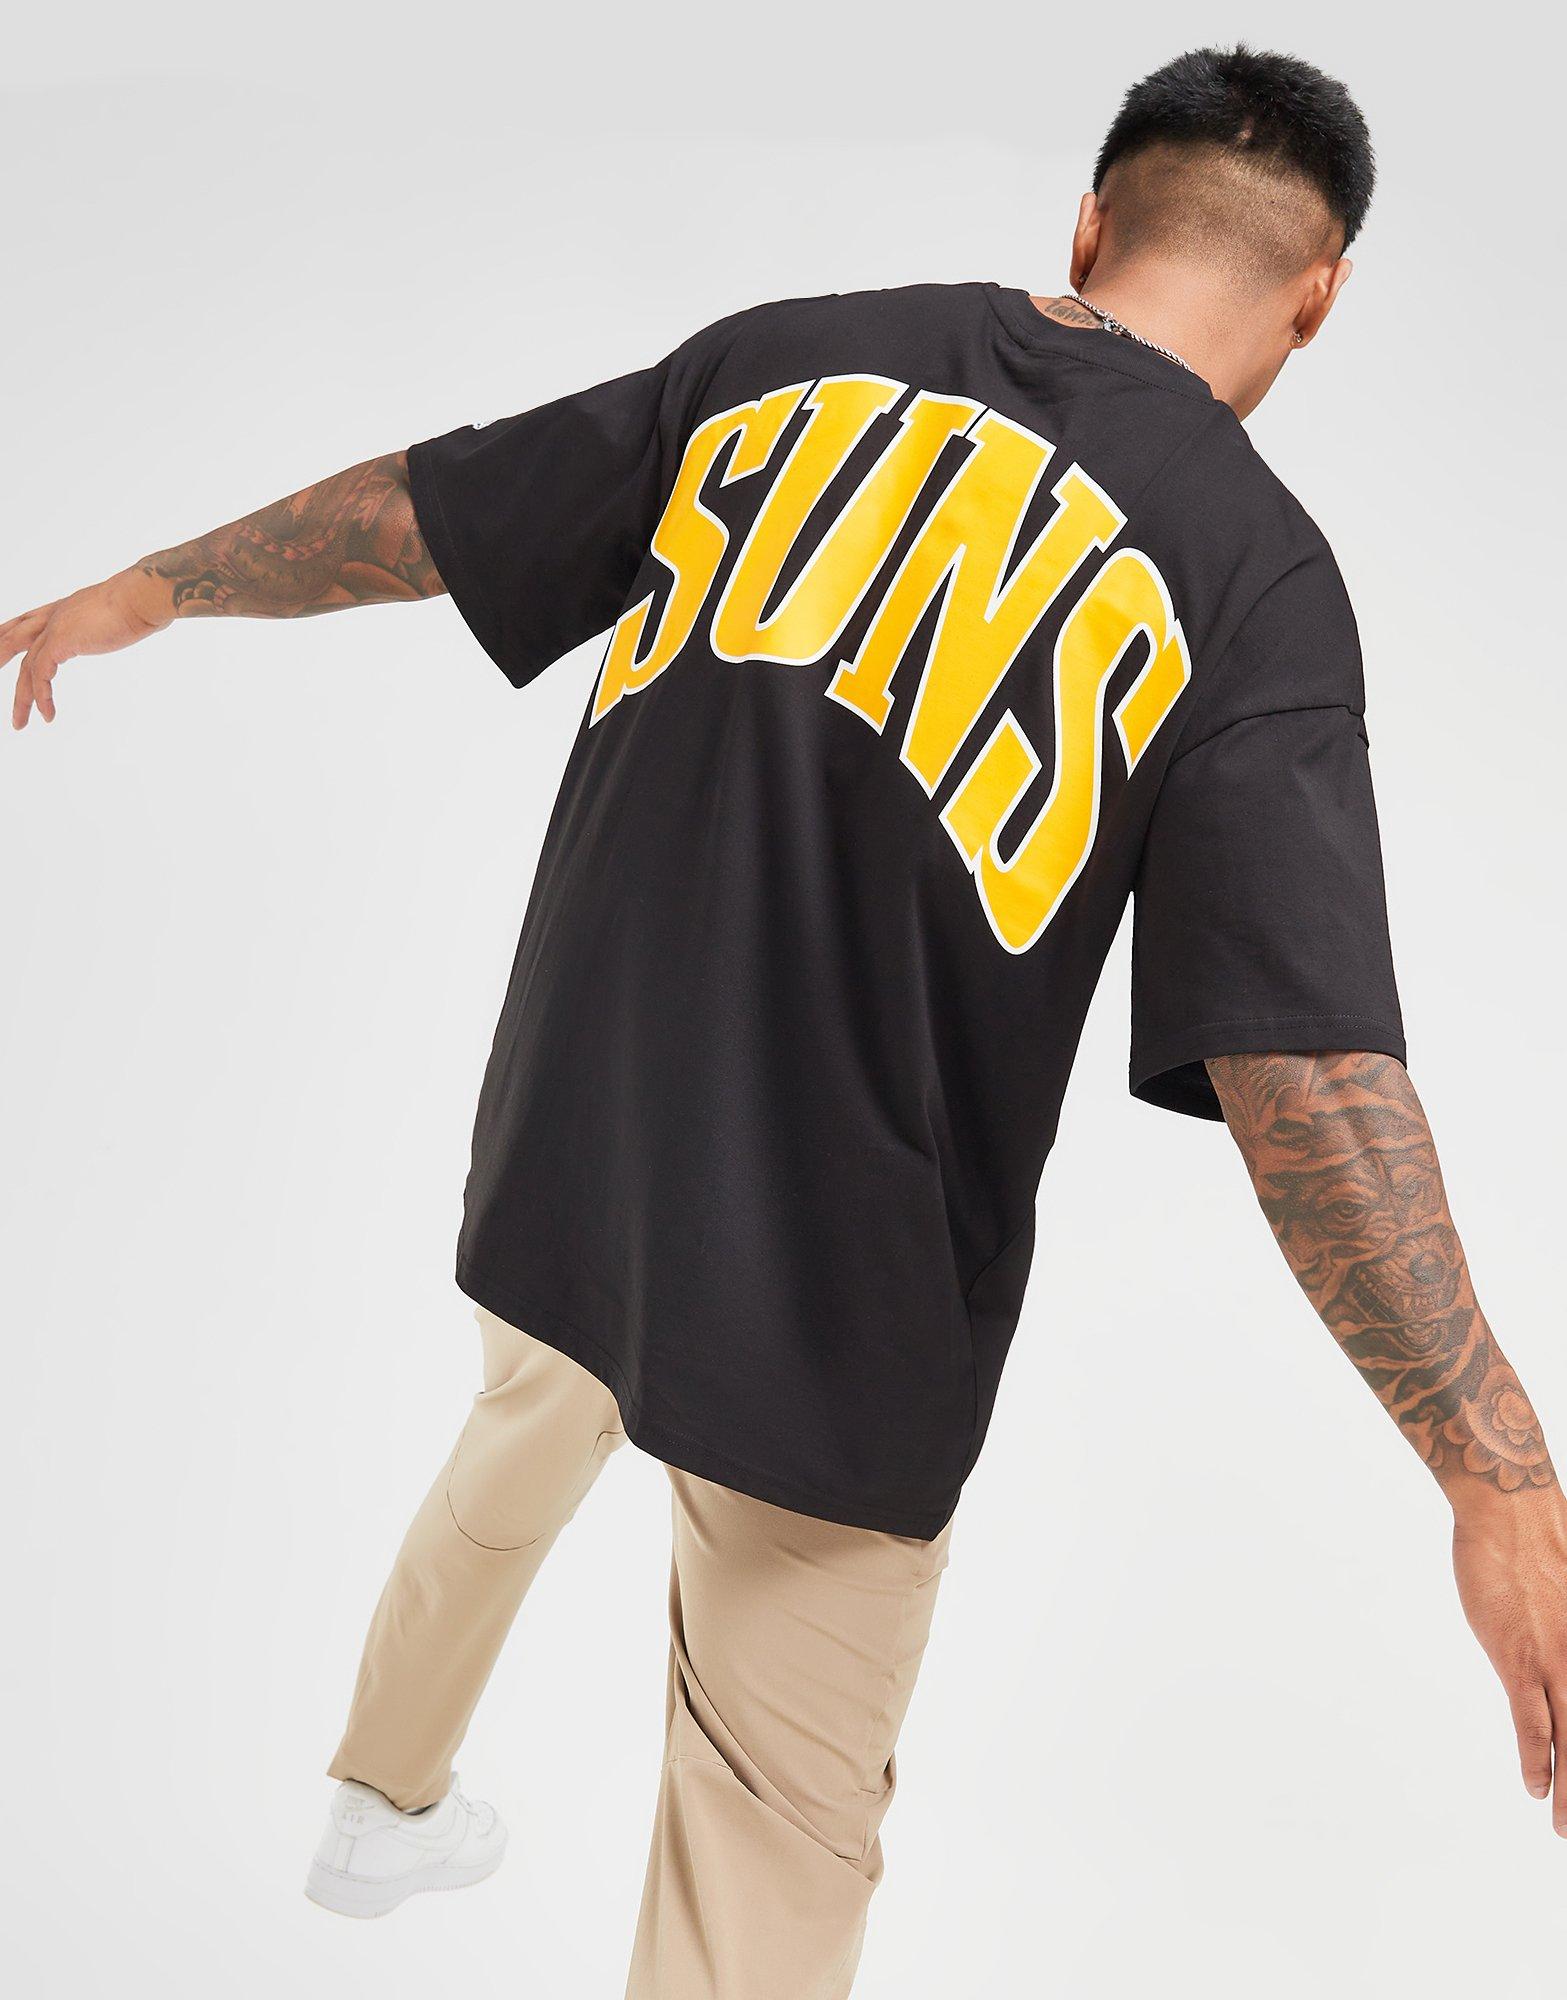 Official NBA store Jordan phoenix suns T-shirt, hoodie, tank top, sweater  and long sleeve t-shirt